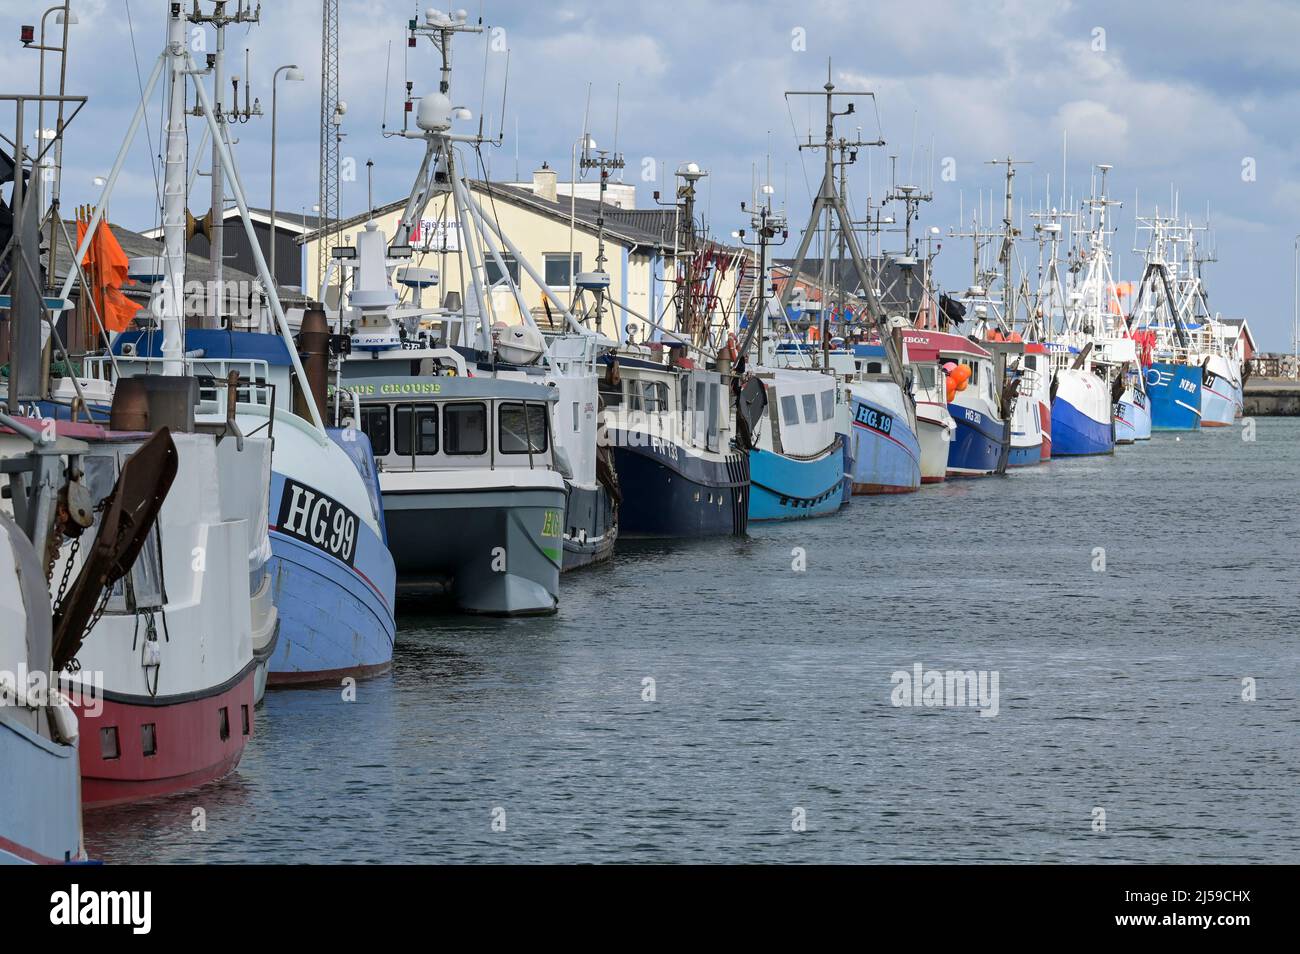 DINAMARCA, Jutland, Hirtshals, puerto pesquero del Mar del Norte con barcos de pesca / Dänemark, Jütland, Hirtshals, Nordsee Hafen, Fischerboote Foto de stock